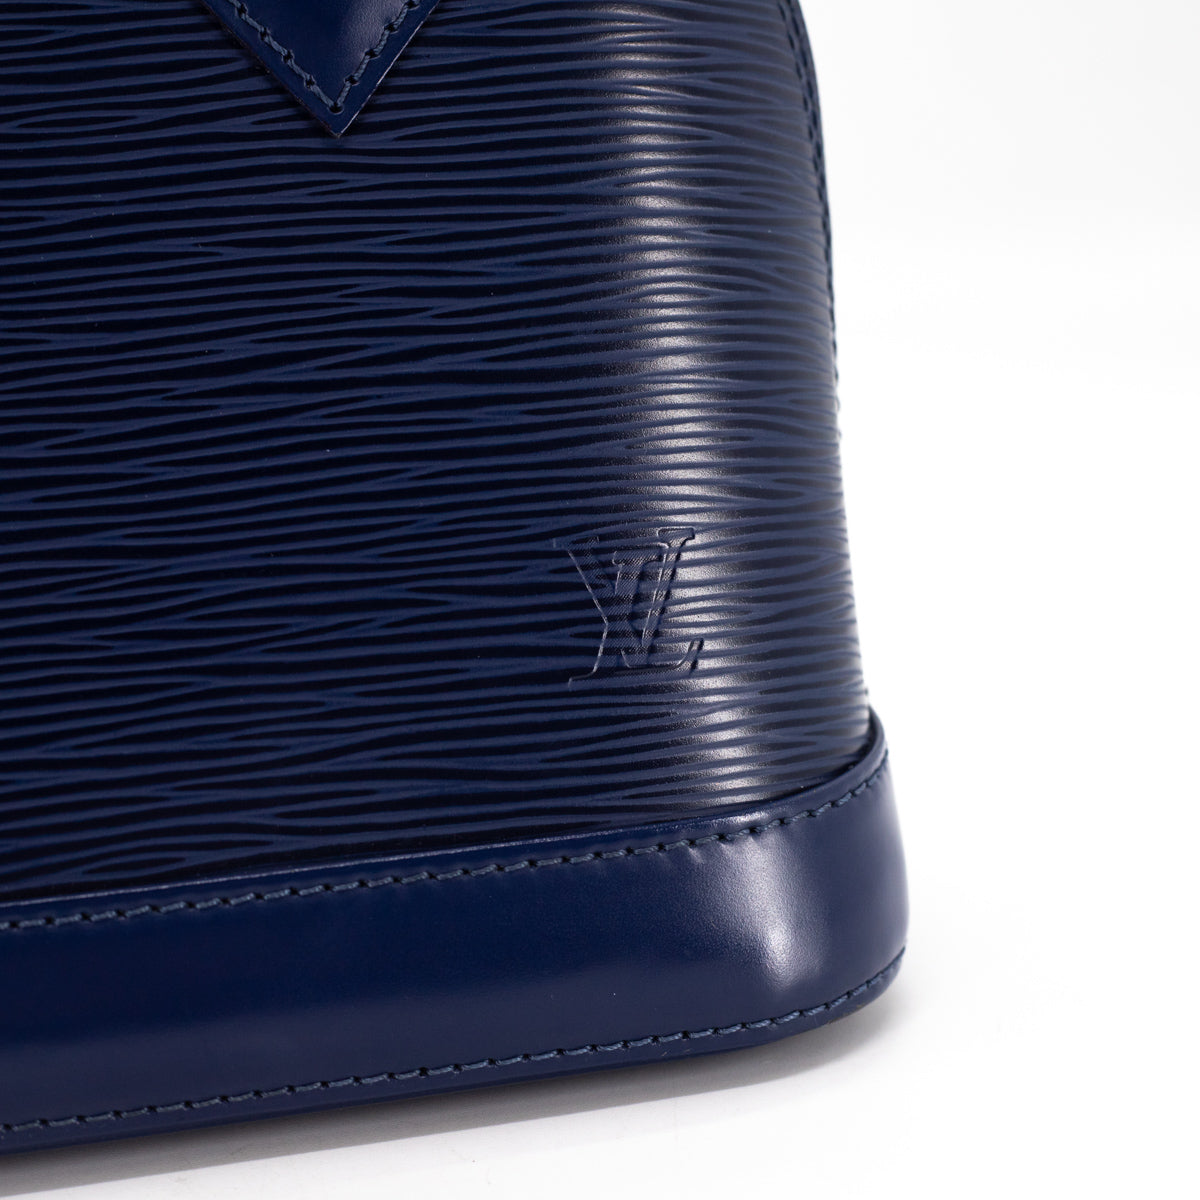 Isabella's Wardrobe - Louis Vuitton Alma PM Epi Leather Indigo Bag